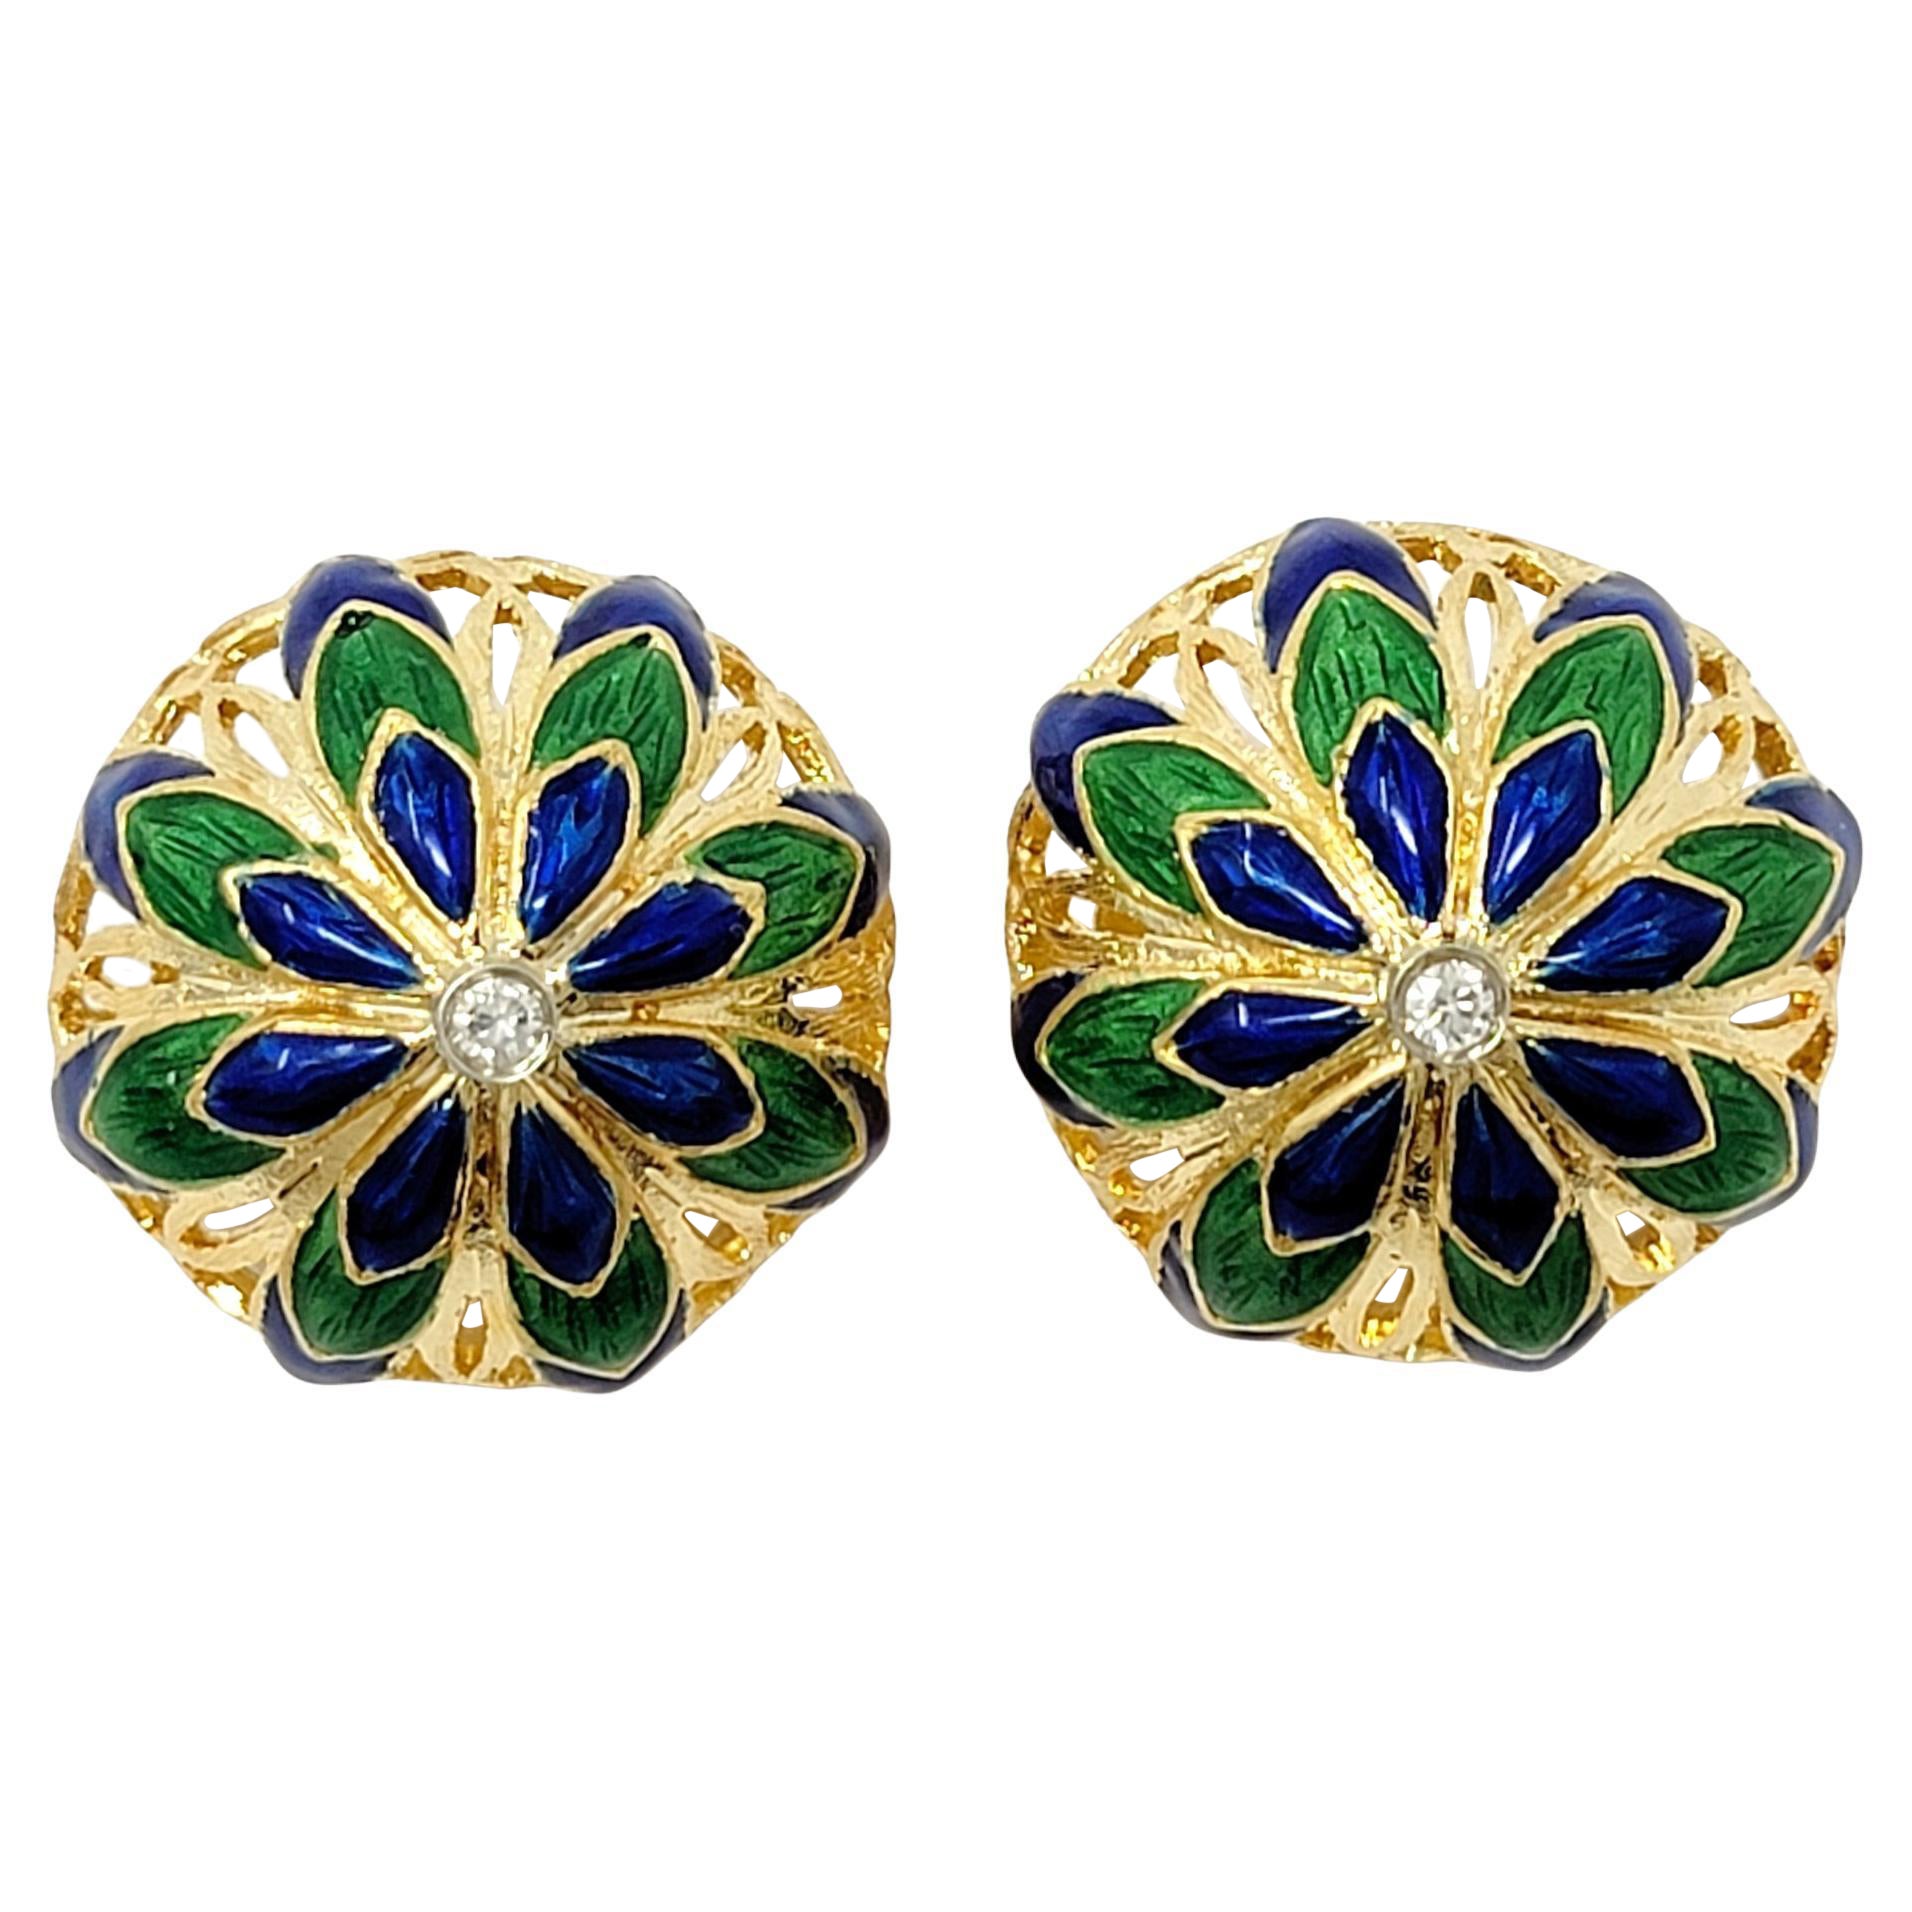  Diamant- und Emaille-Ohrringe in Form einer Blumenkuppel aus 14 Karat Gold, nicht durchbrochene Clip-Ohrringe